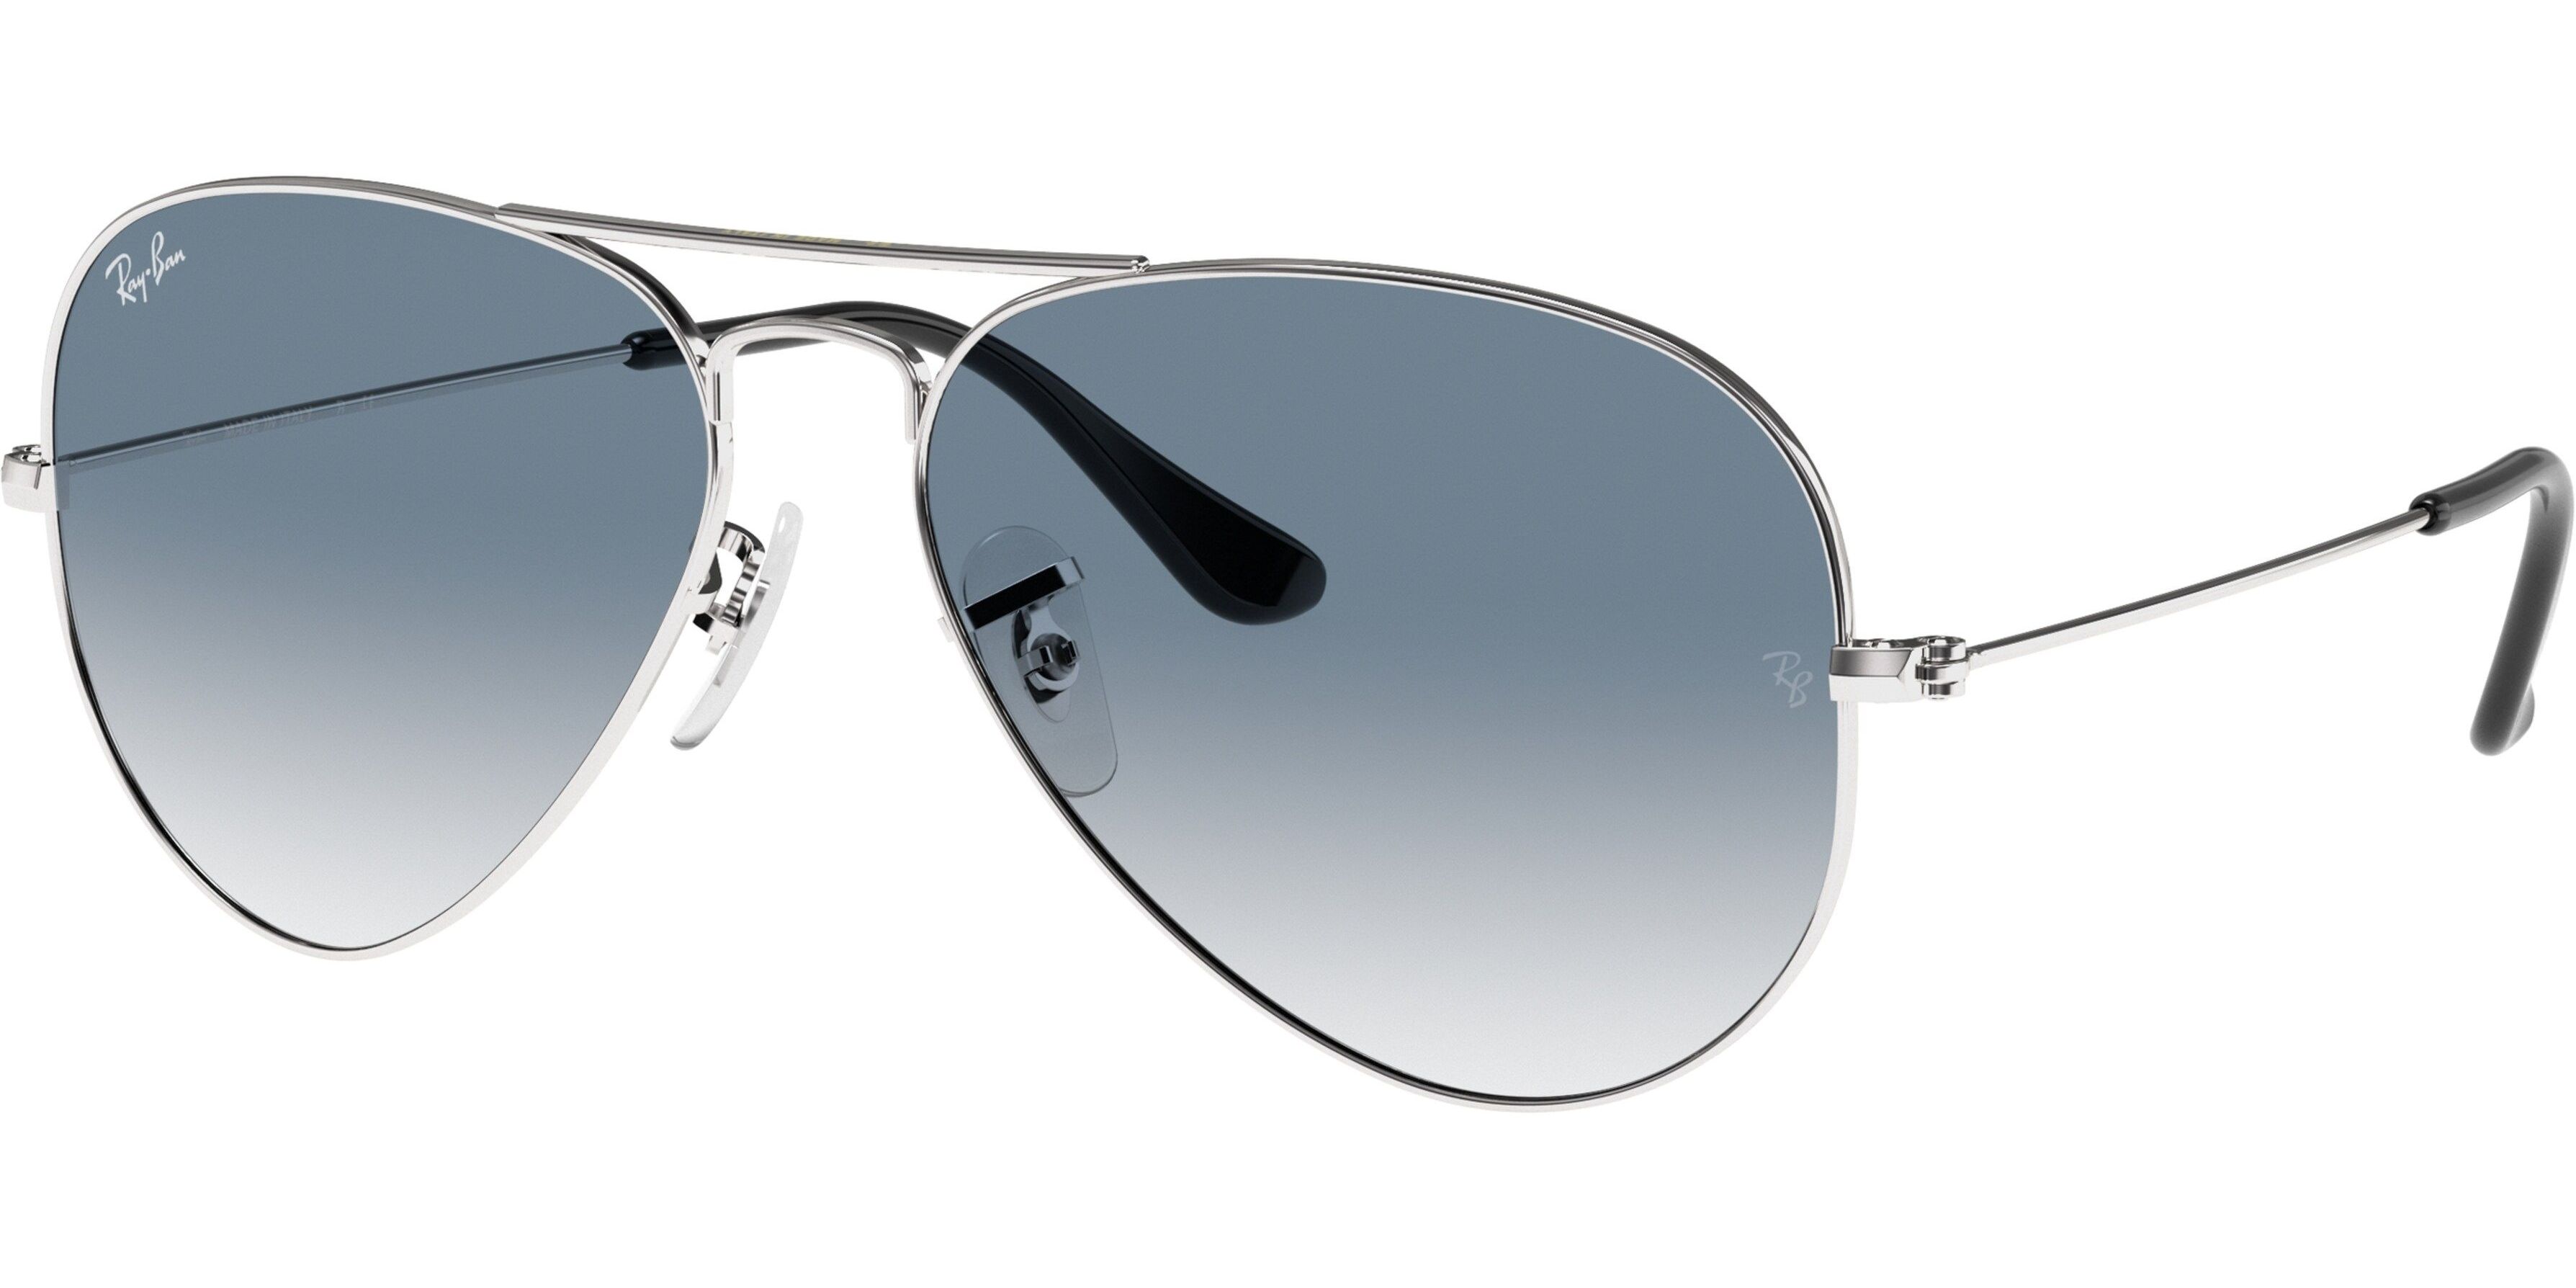 Sluneční brýle Ray-Ban® model 3025, barva obruby stříbrná lesk, čočka modrá gradál, kód barevné varianty 0033F. 